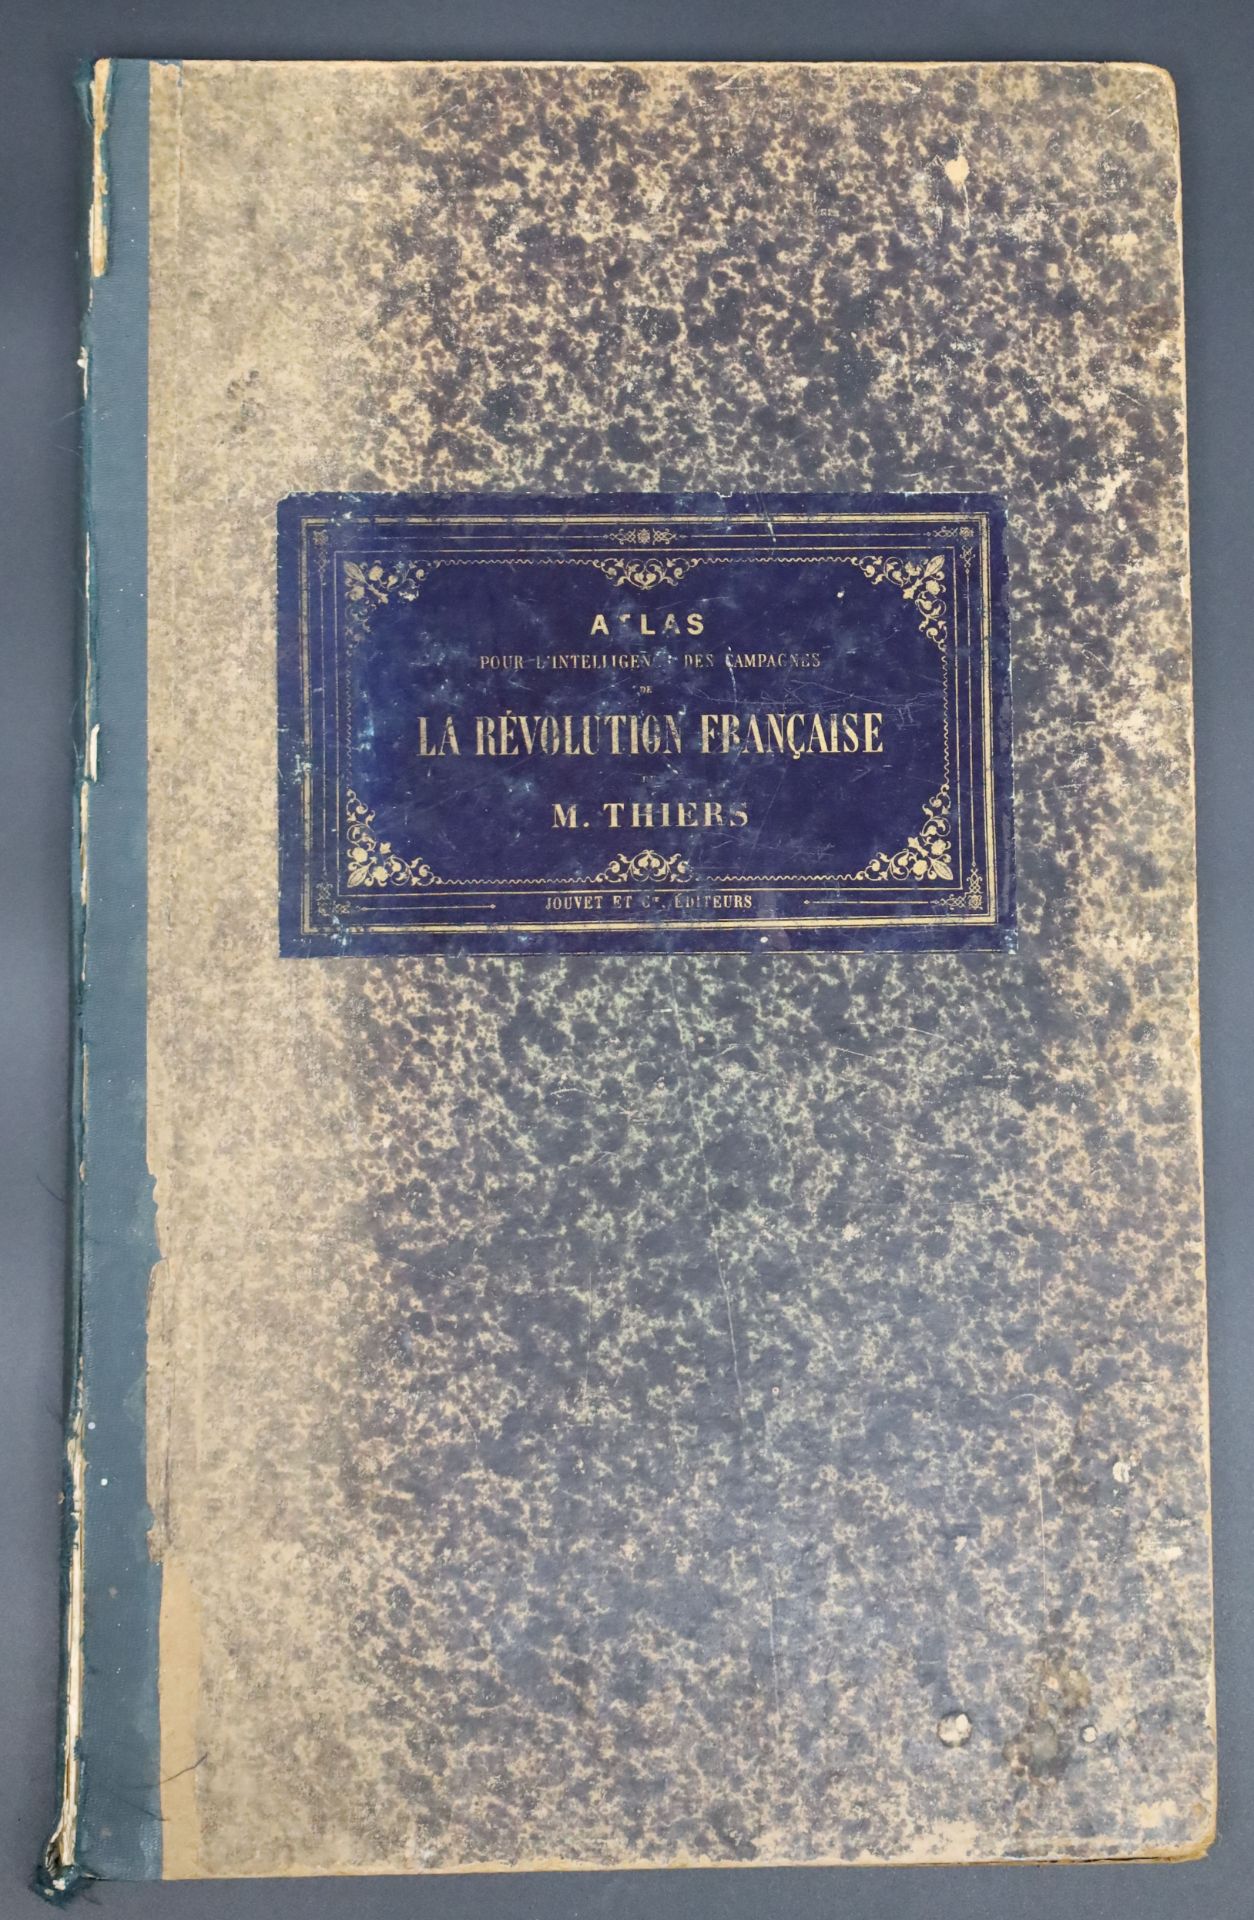 M. THIERS. "Atlas pour l'intelligence des Campagnes de la Révolution Française".